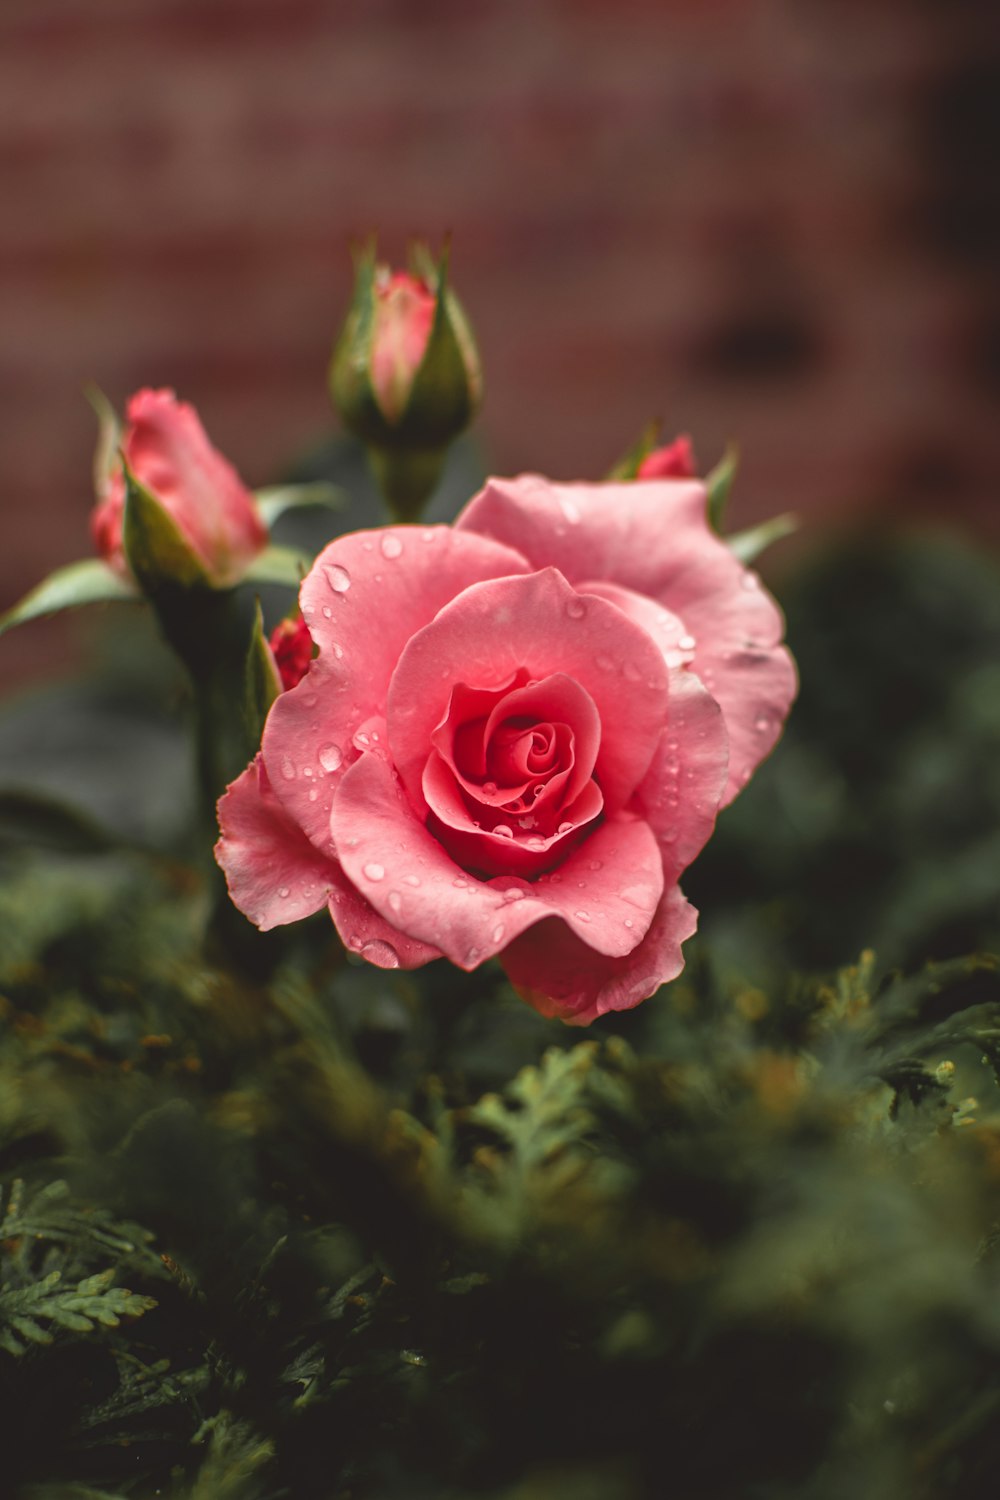 Les roses roses fleurissent avec des gouttes d’eau